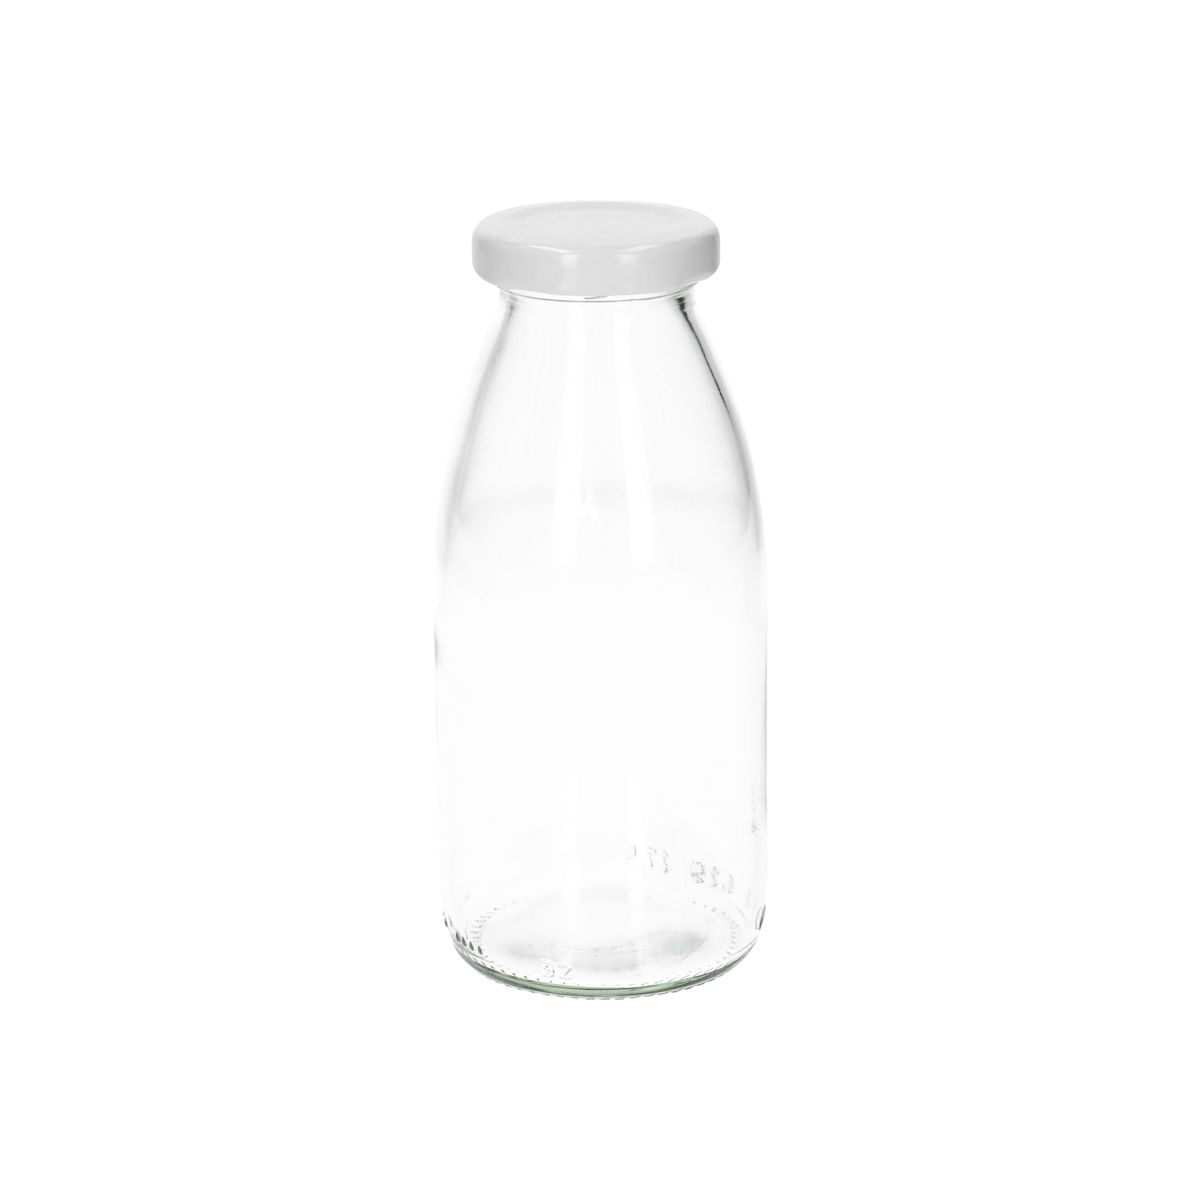 Melkfles, glas, 263 ml | Fermenteren | Dille